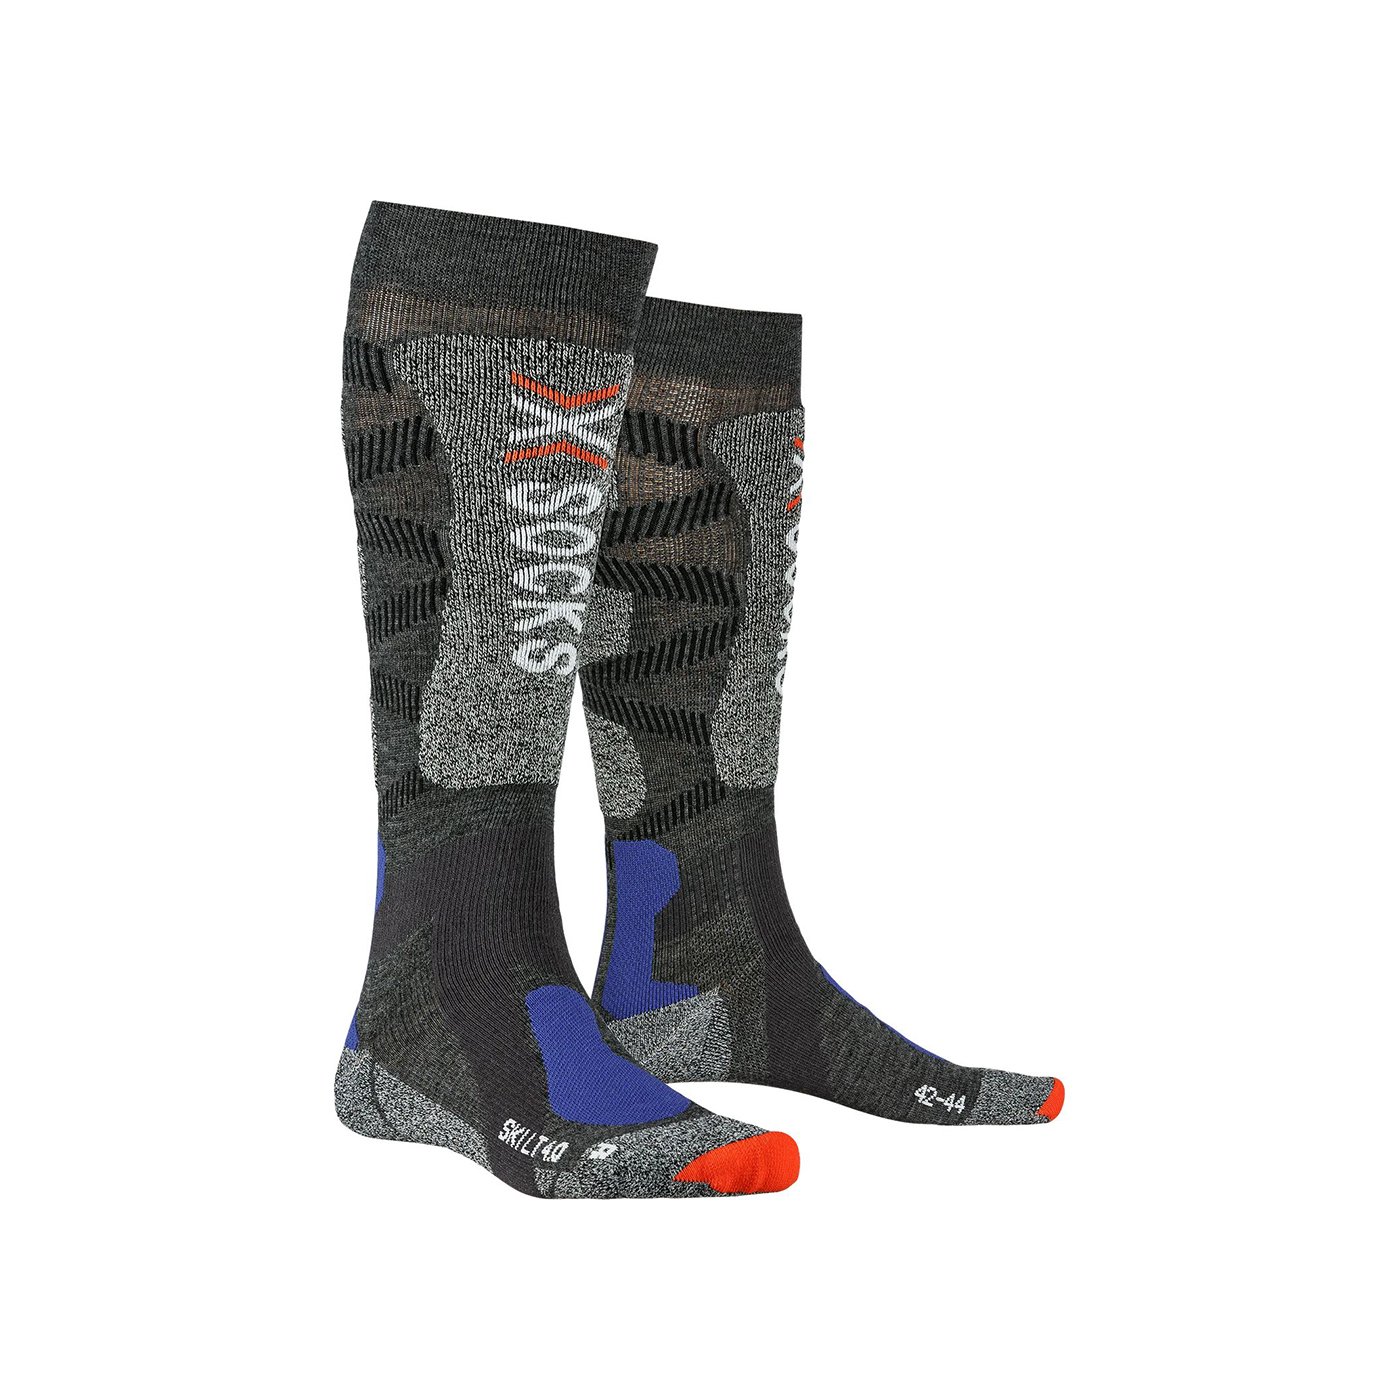 X-Bionic Ski LT 4.0 Kayak/Snowboard Çorabı - Renkli - 1